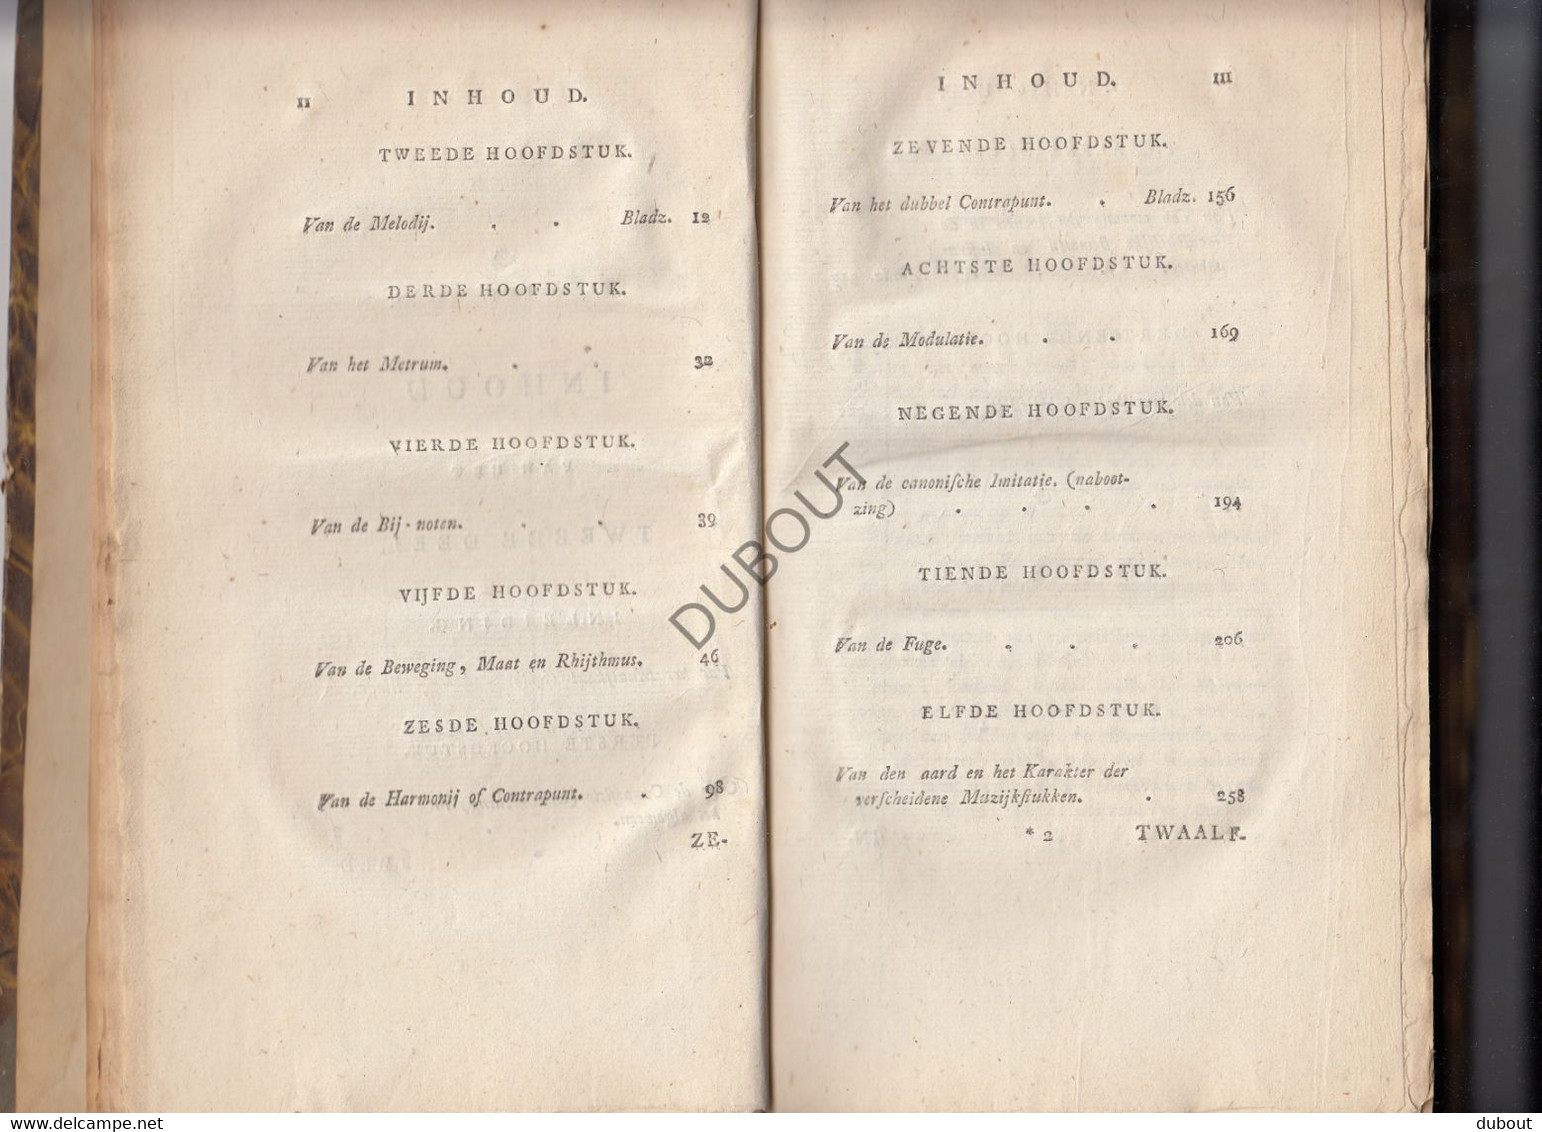 Muziek/Music - Theorie der Hedendaagsche Muzijk - C. F. Ruppe, Groningen, 1848 - 2 delen  (S175)